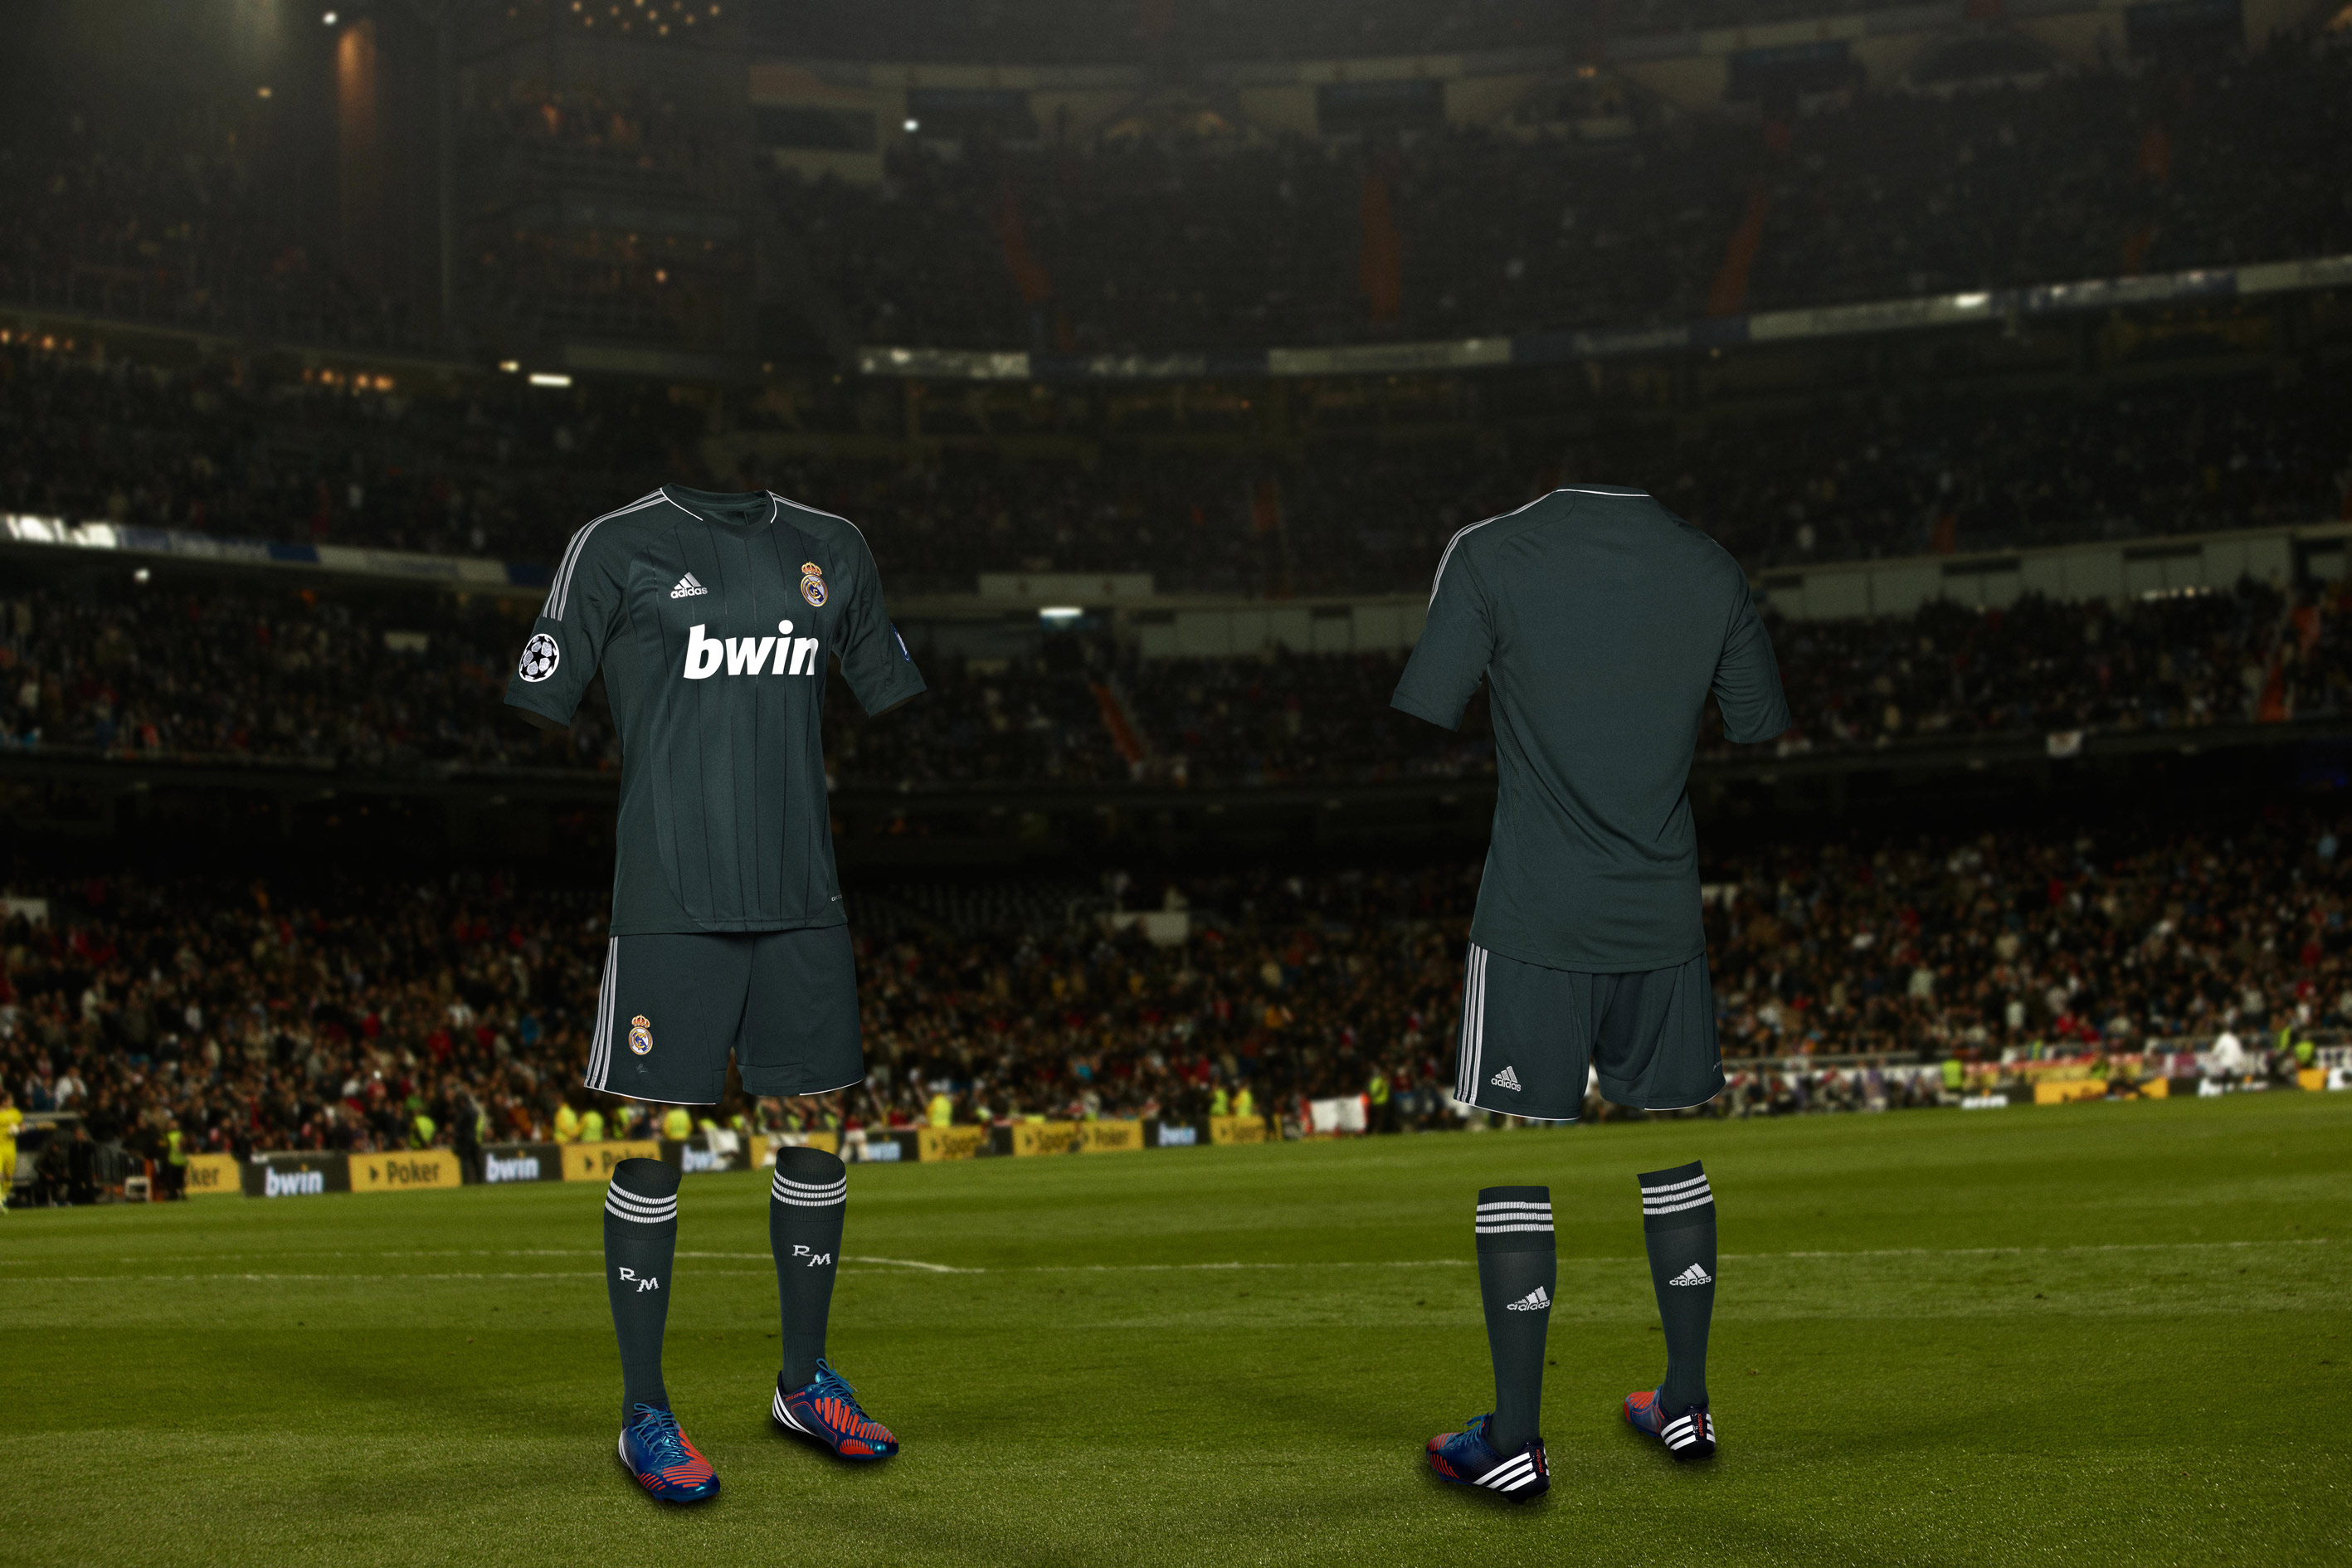 3ra Camiseta del Real Madrid 2012/2013